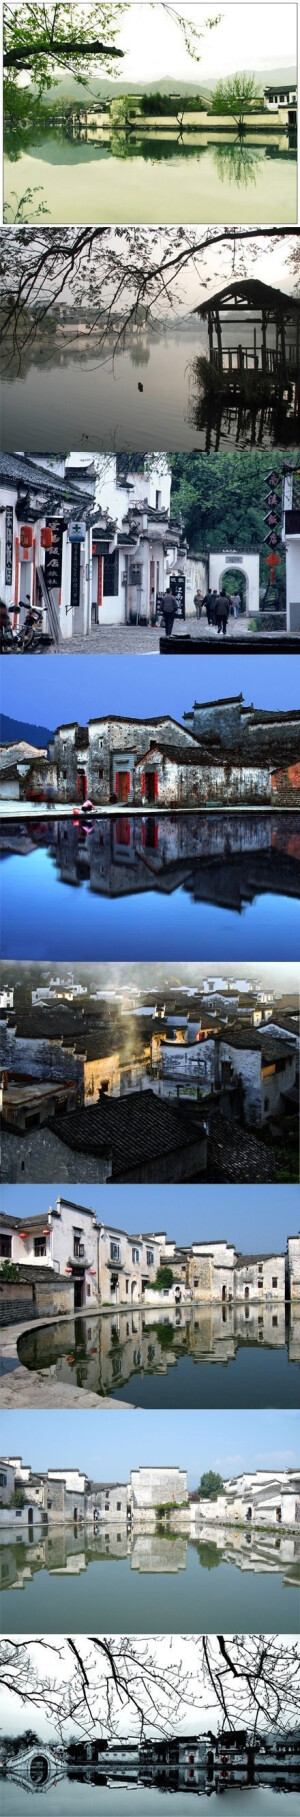 宏村是皖南古村落，非常值得一玩的地方。建于明清时代粉墙黛瓦，临于水边，映于倒影，一片黑白明透烟雨索清的感觉，很美，也很舒适。